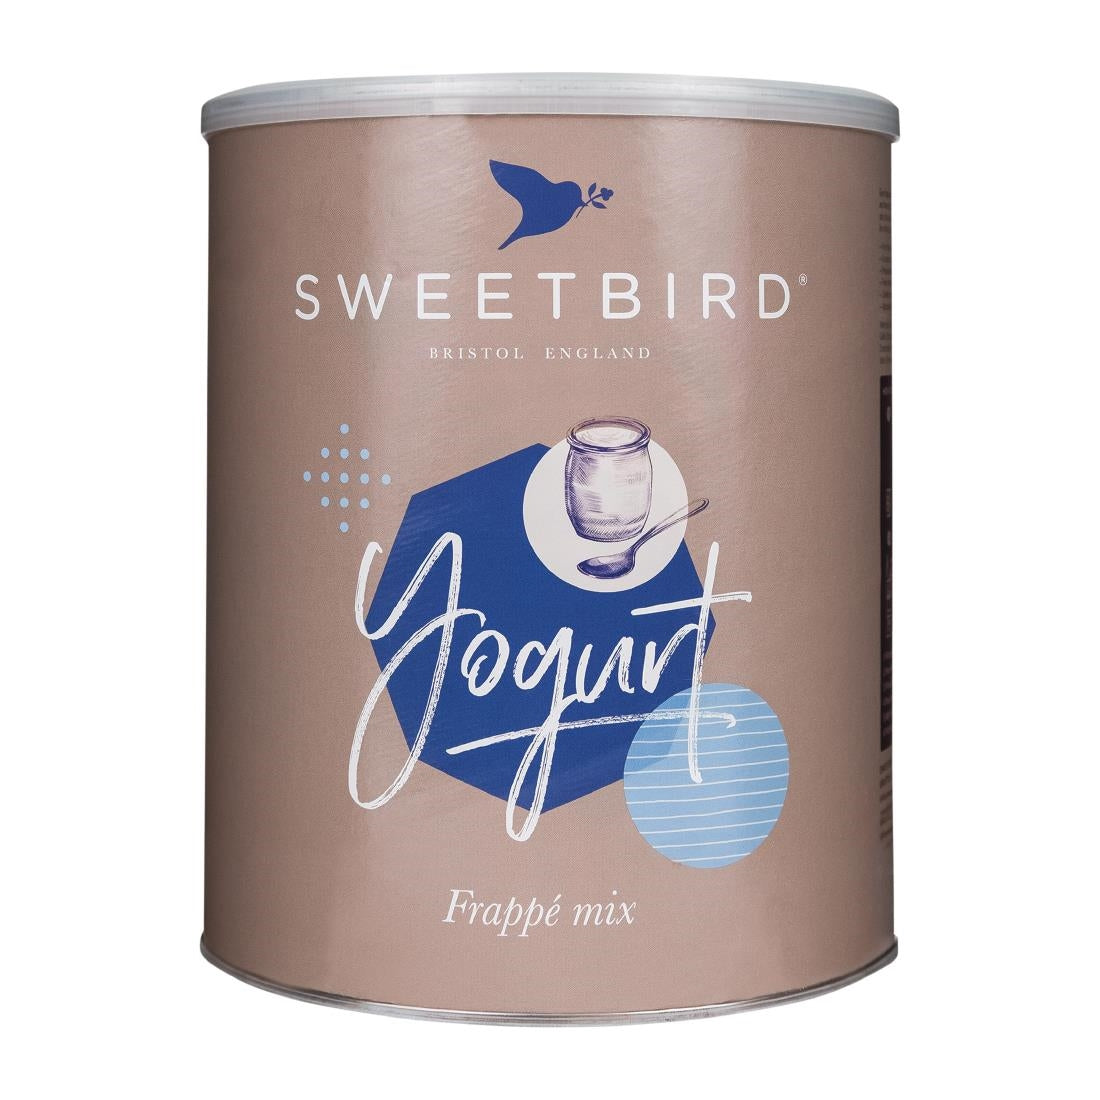 DX601 Sweetbird Yogurt Frappé Mix 2kg Tin